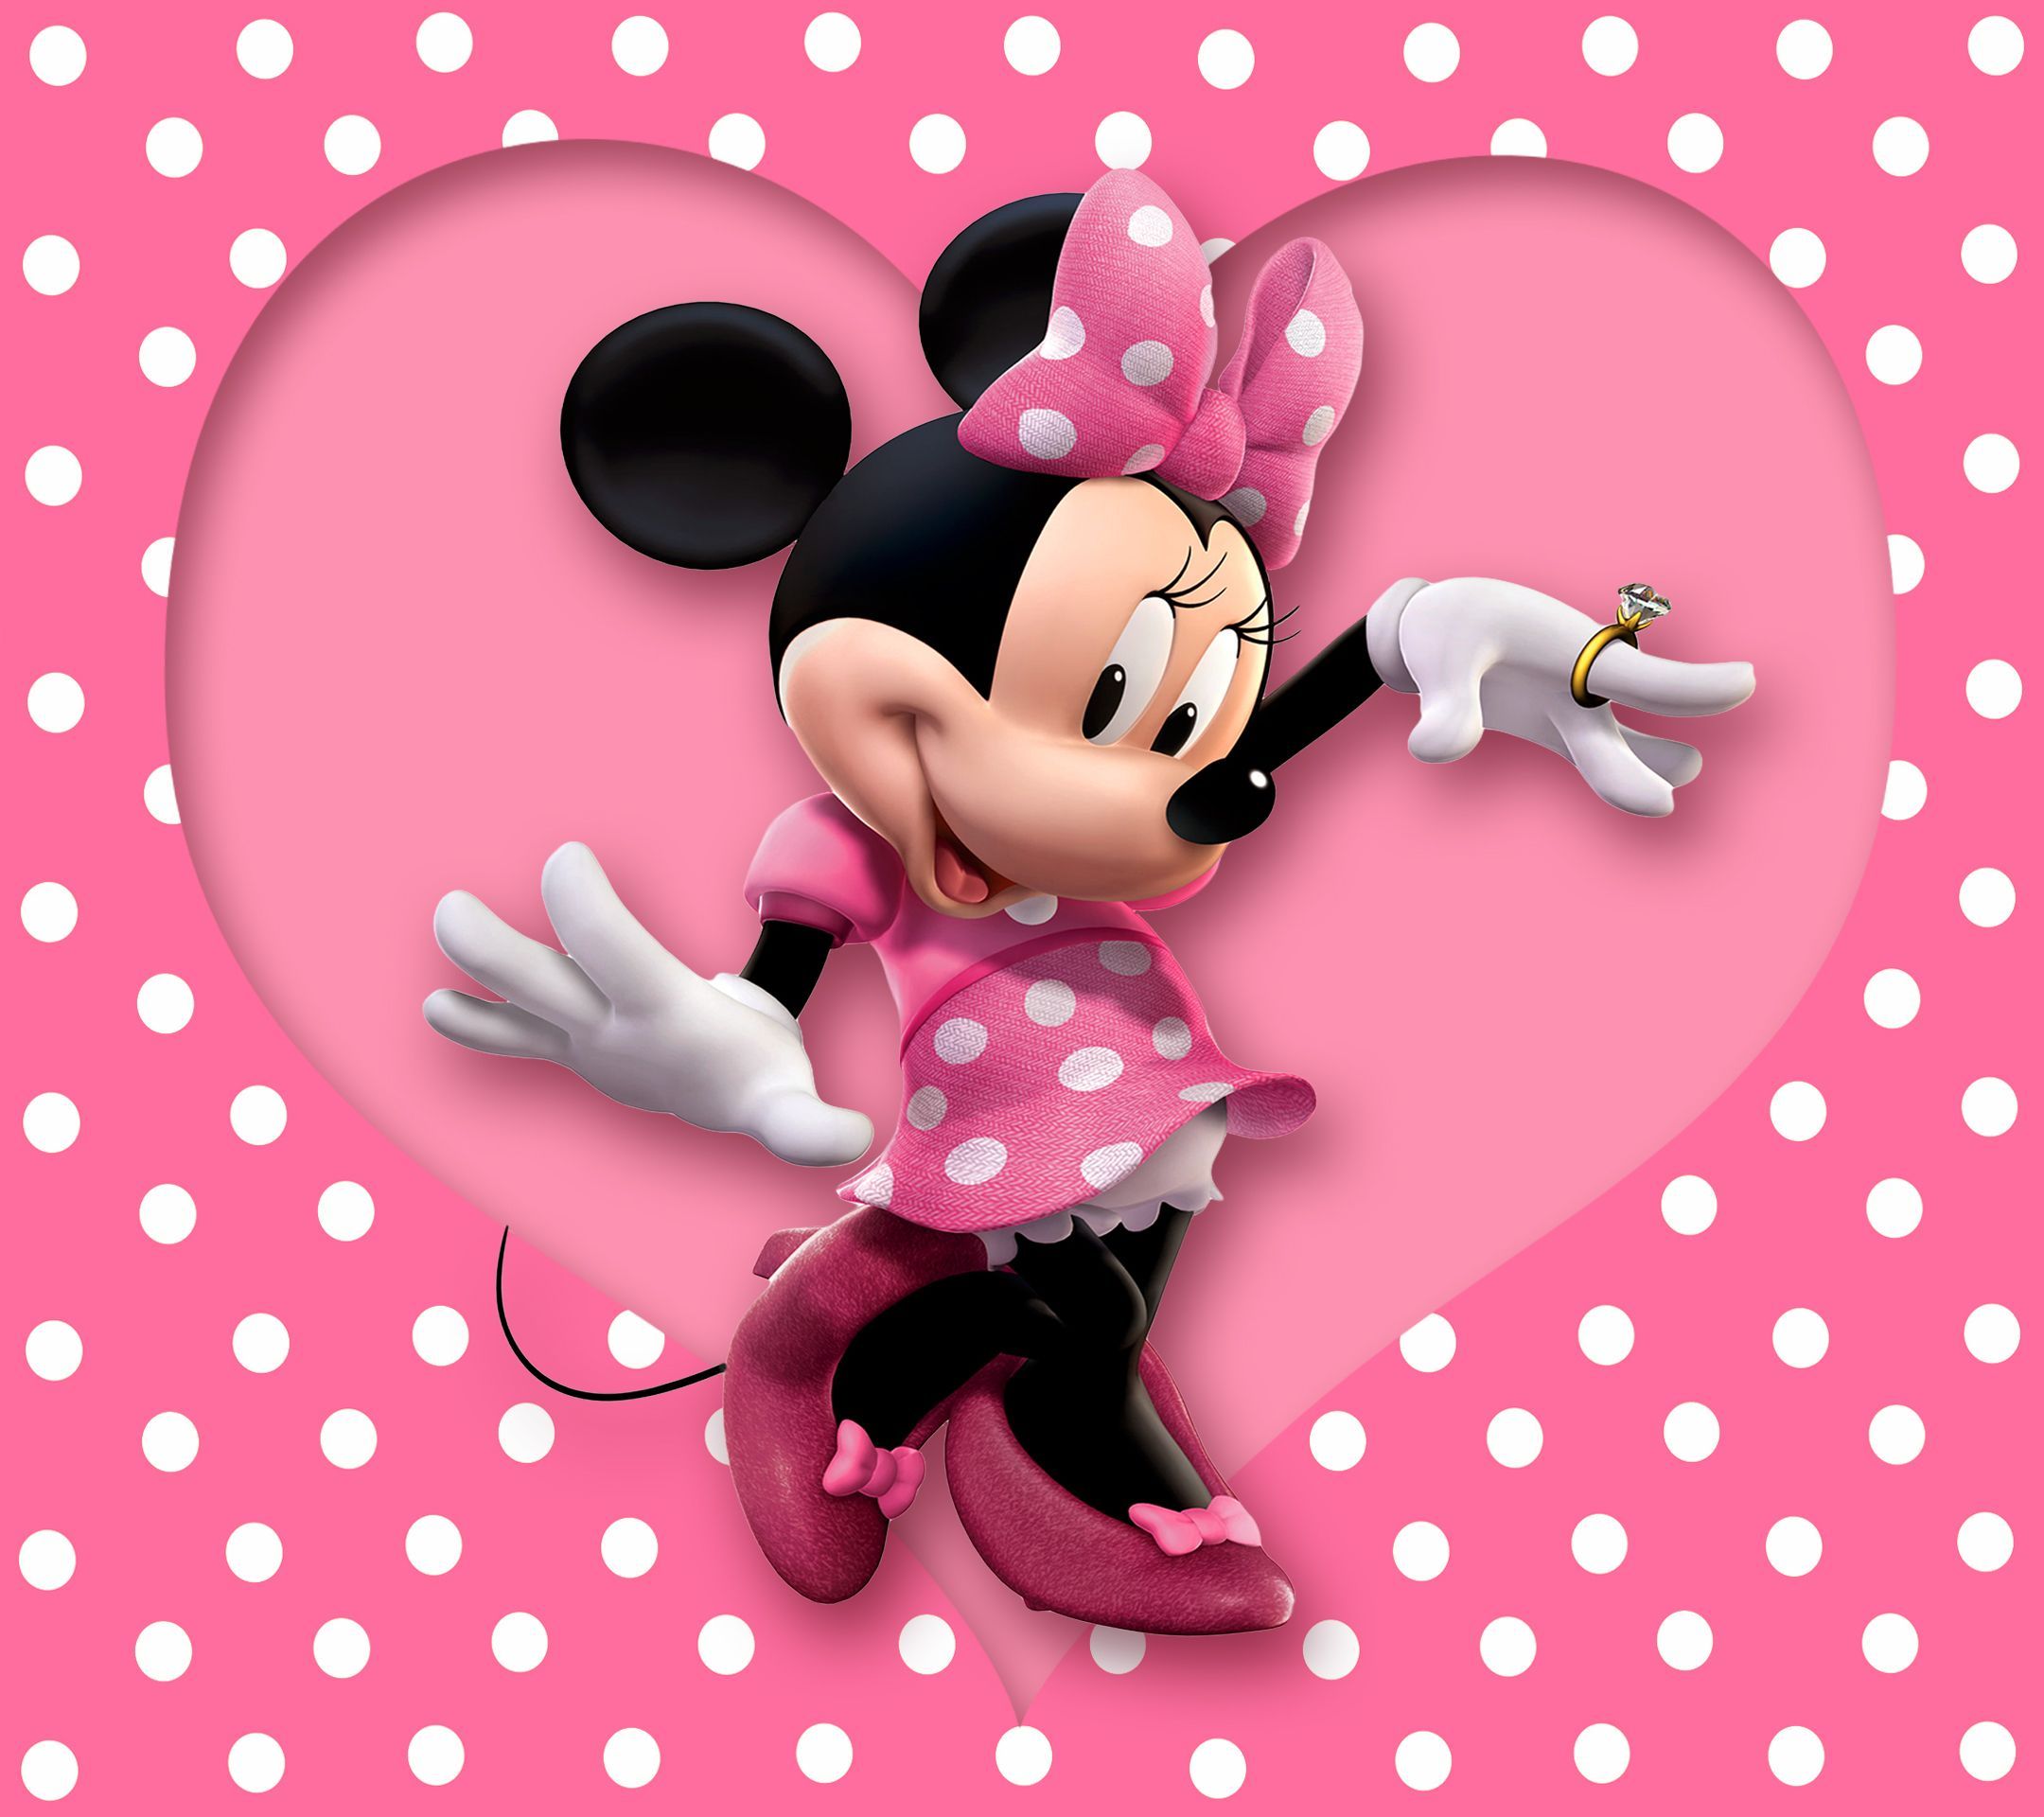 Minnie Mouse Polka Dot Wallpaper Free Minnie Mouse Polka Dot Background. Minnie mouse image, Minnie mouse cartoons, Mickey mouse wallpaper